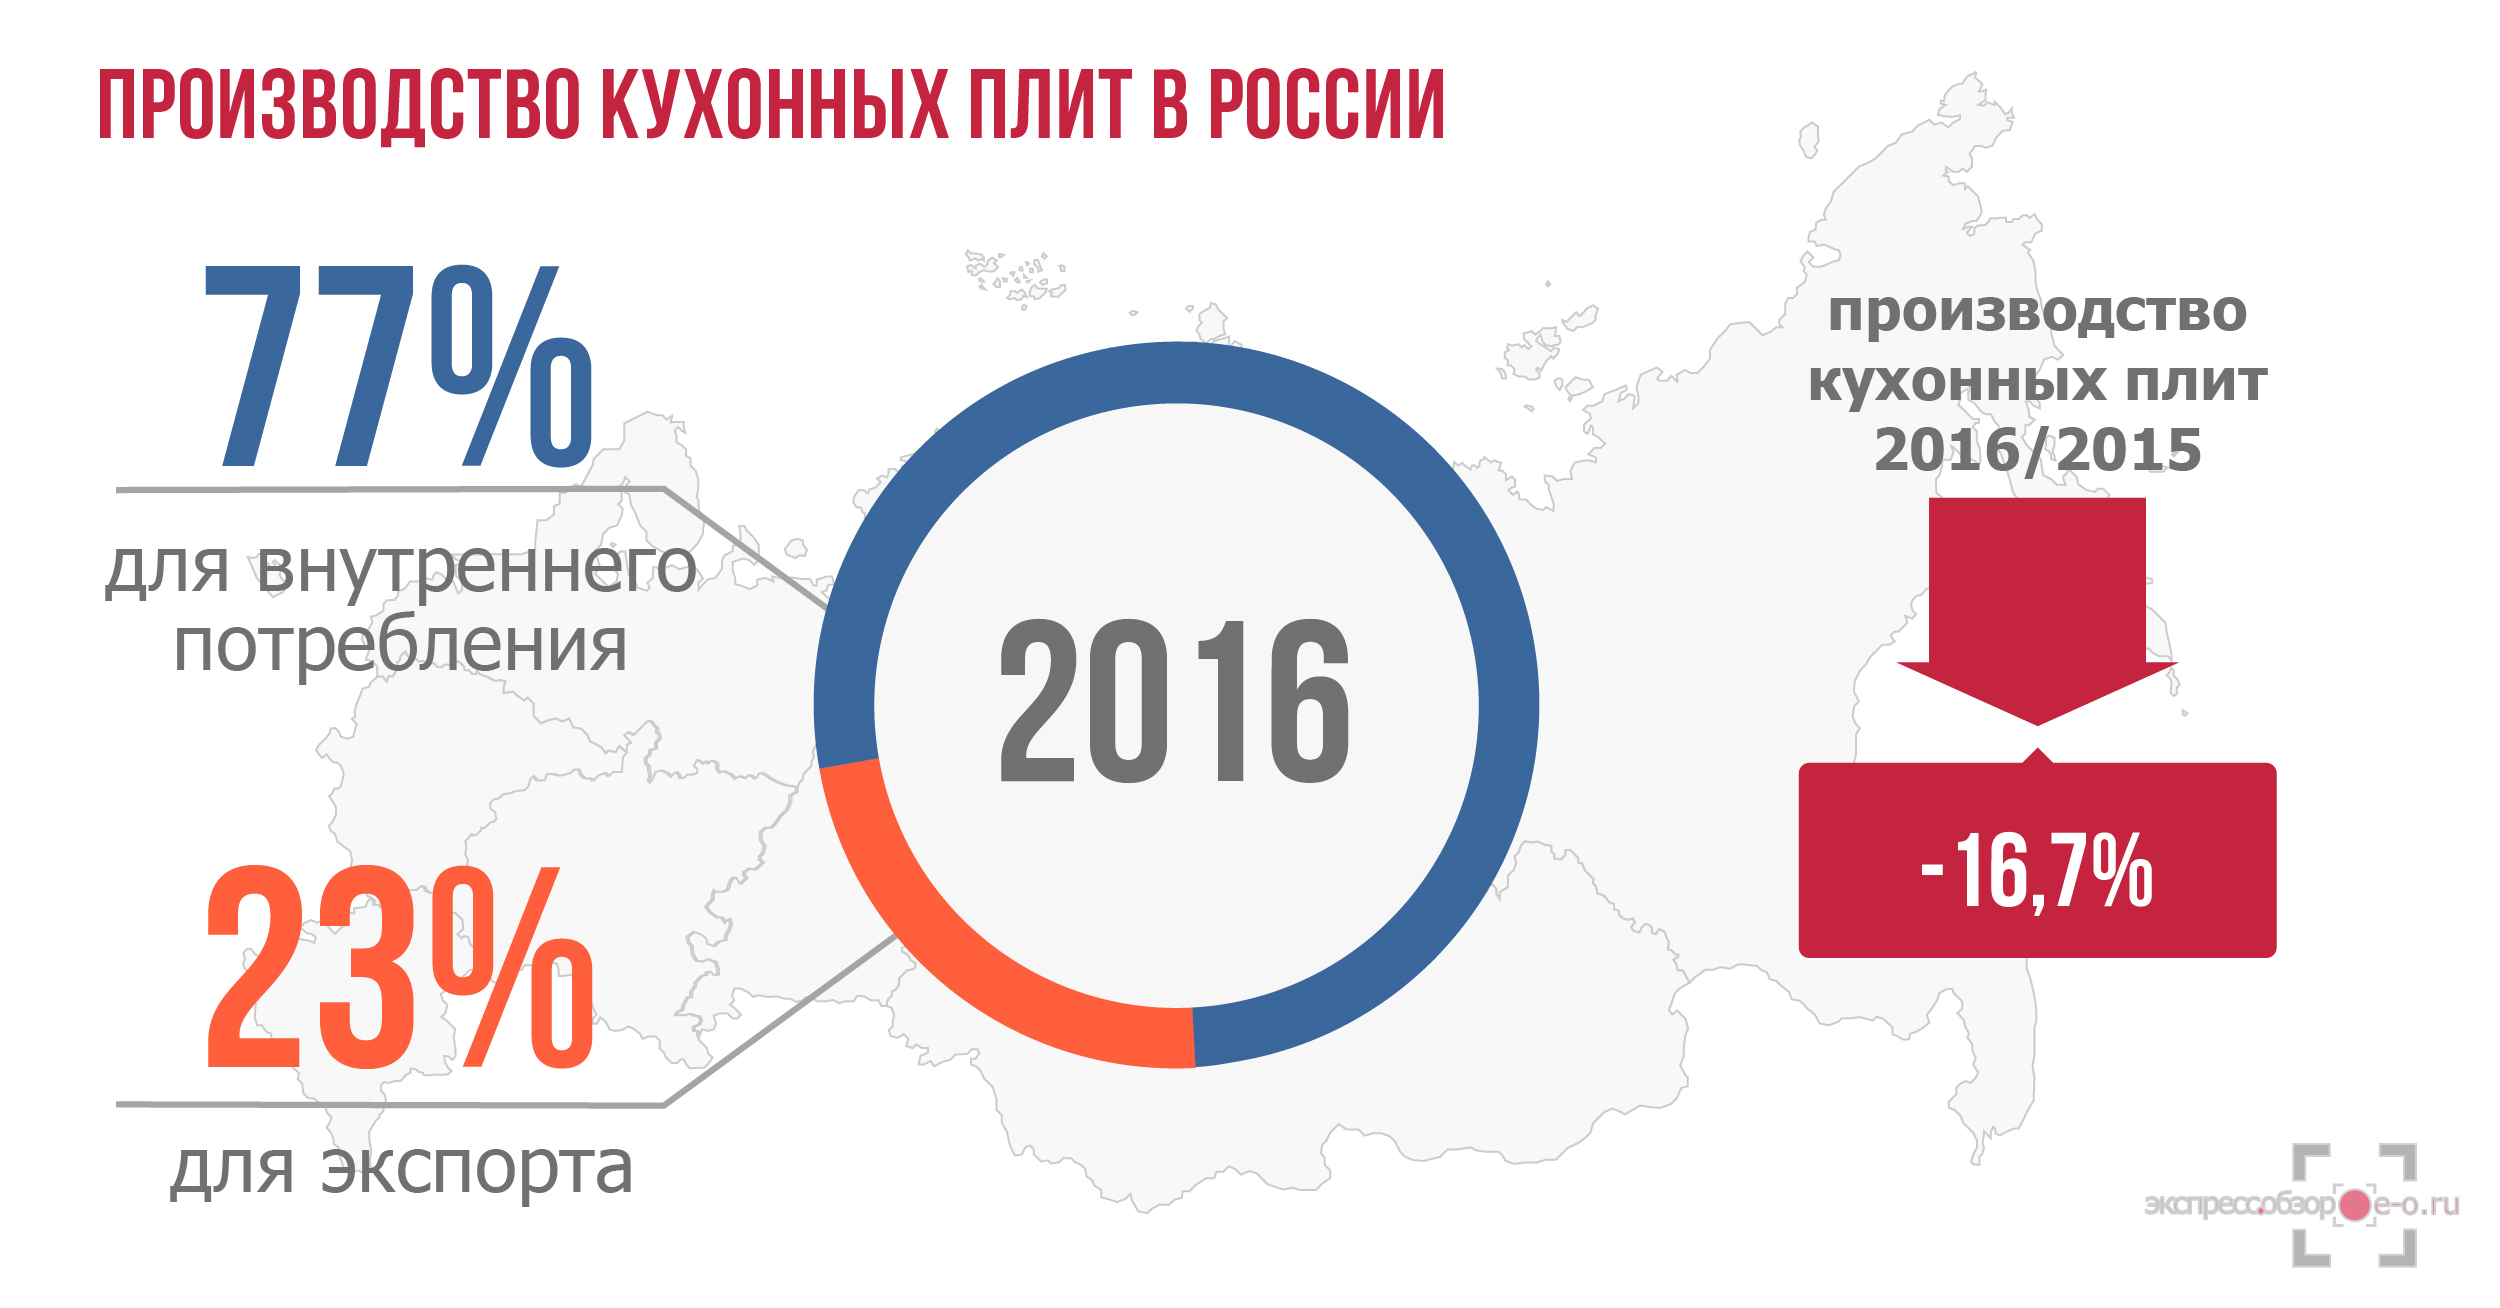 Производство кухонных плит в России в 2016 году